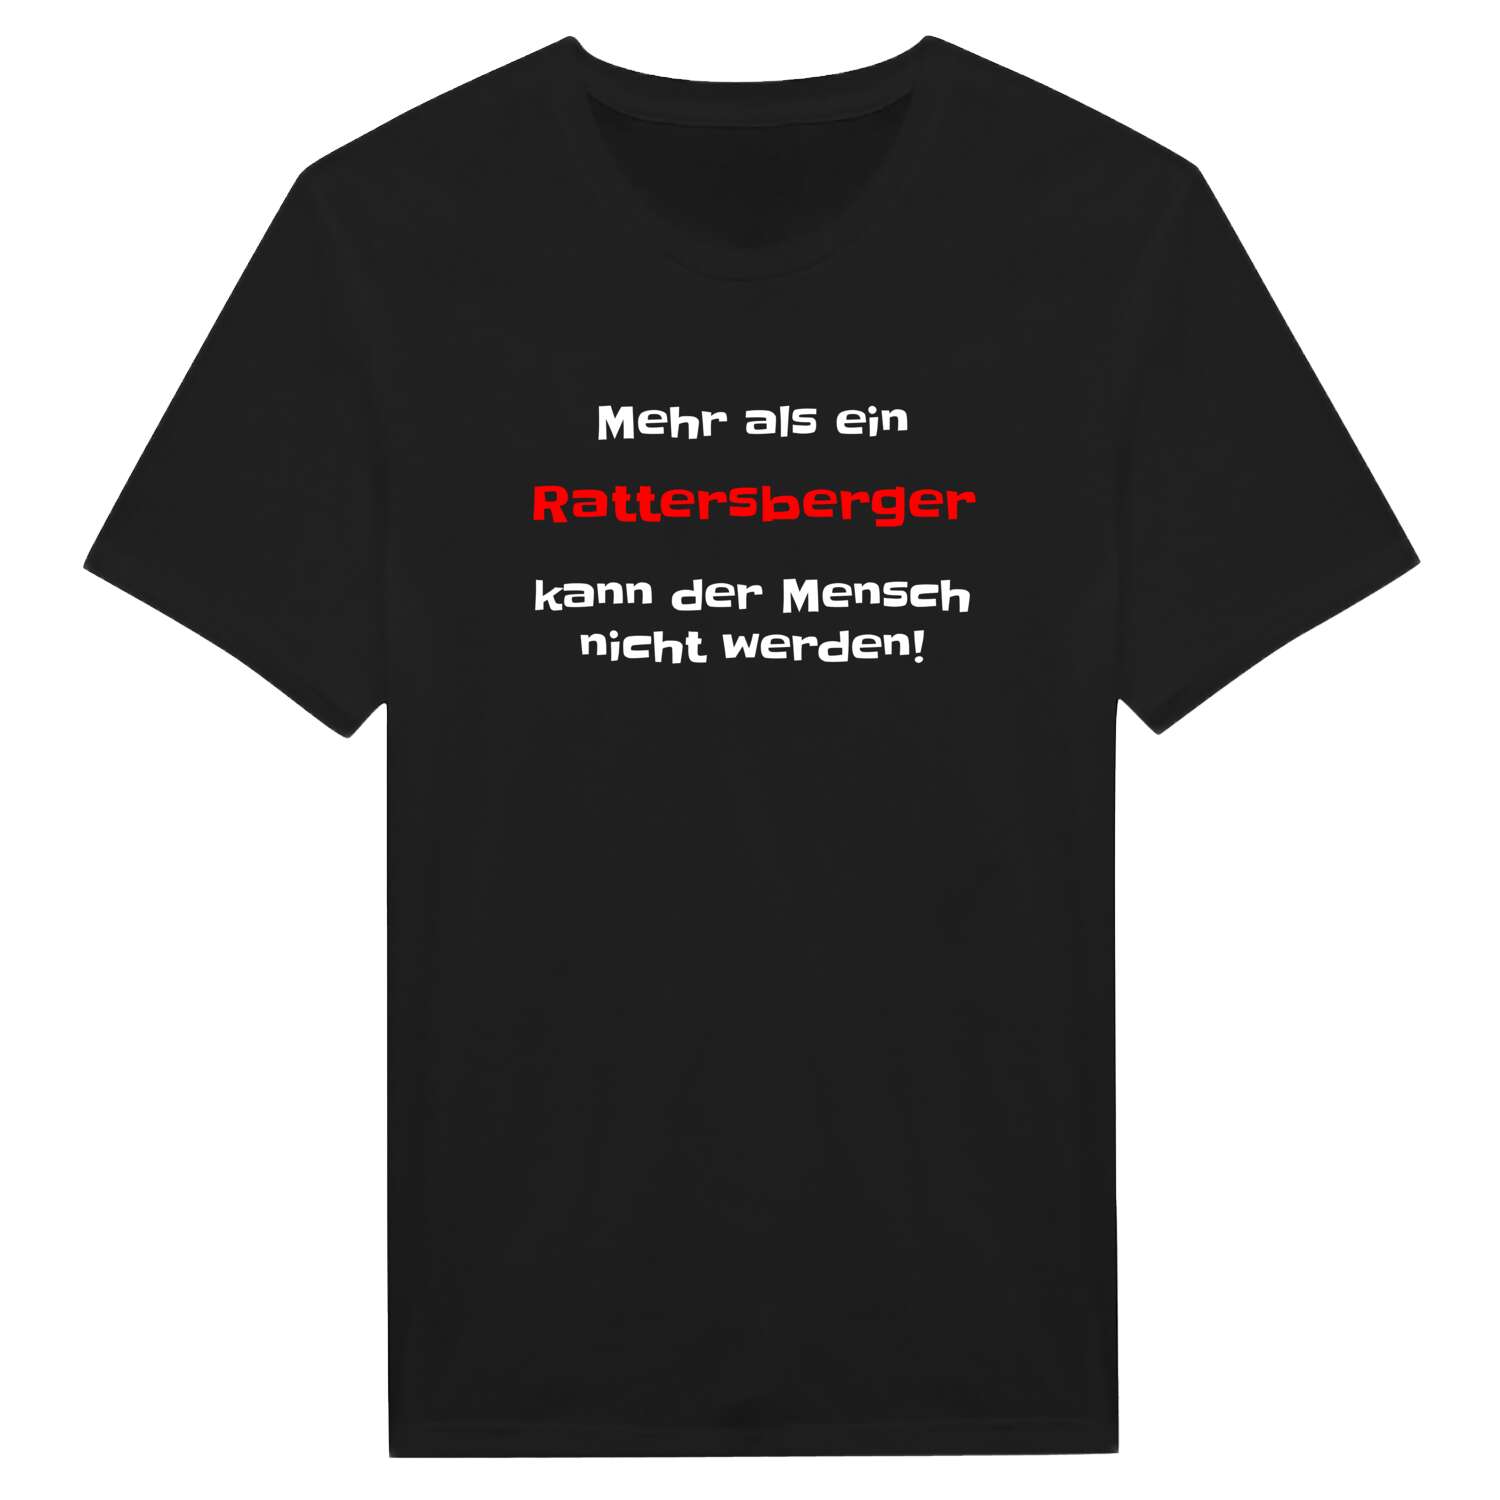 Rattersberg T-Shirt »Mehr als ein«